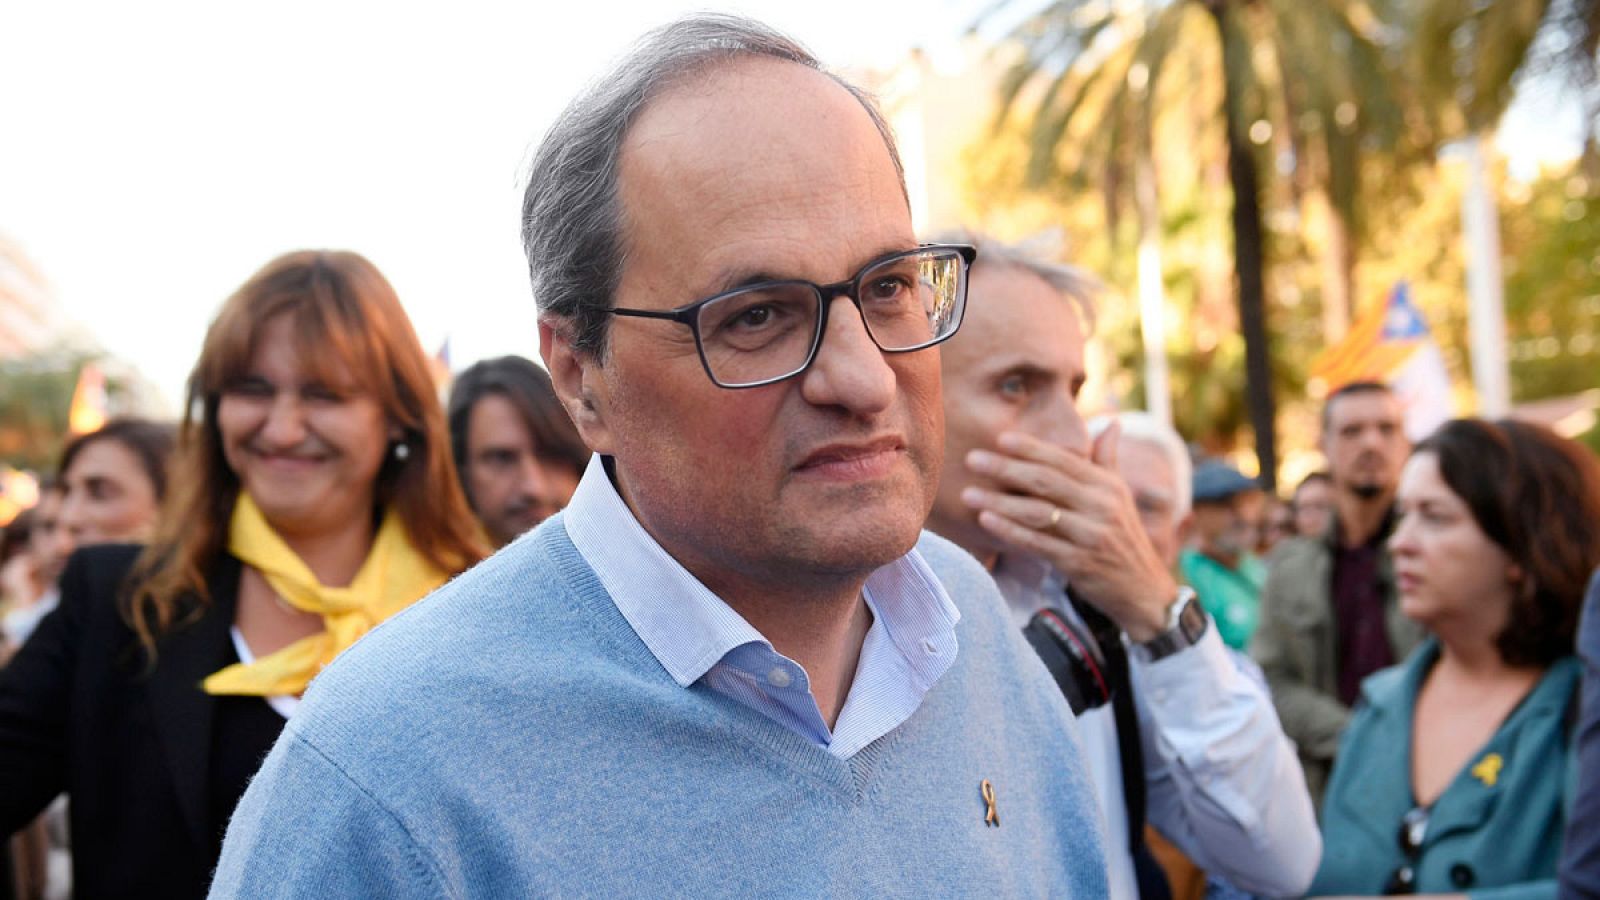 Sentencia procés: Torra: "Iremos tan lejos como el pueblo de Cataluña quiera"